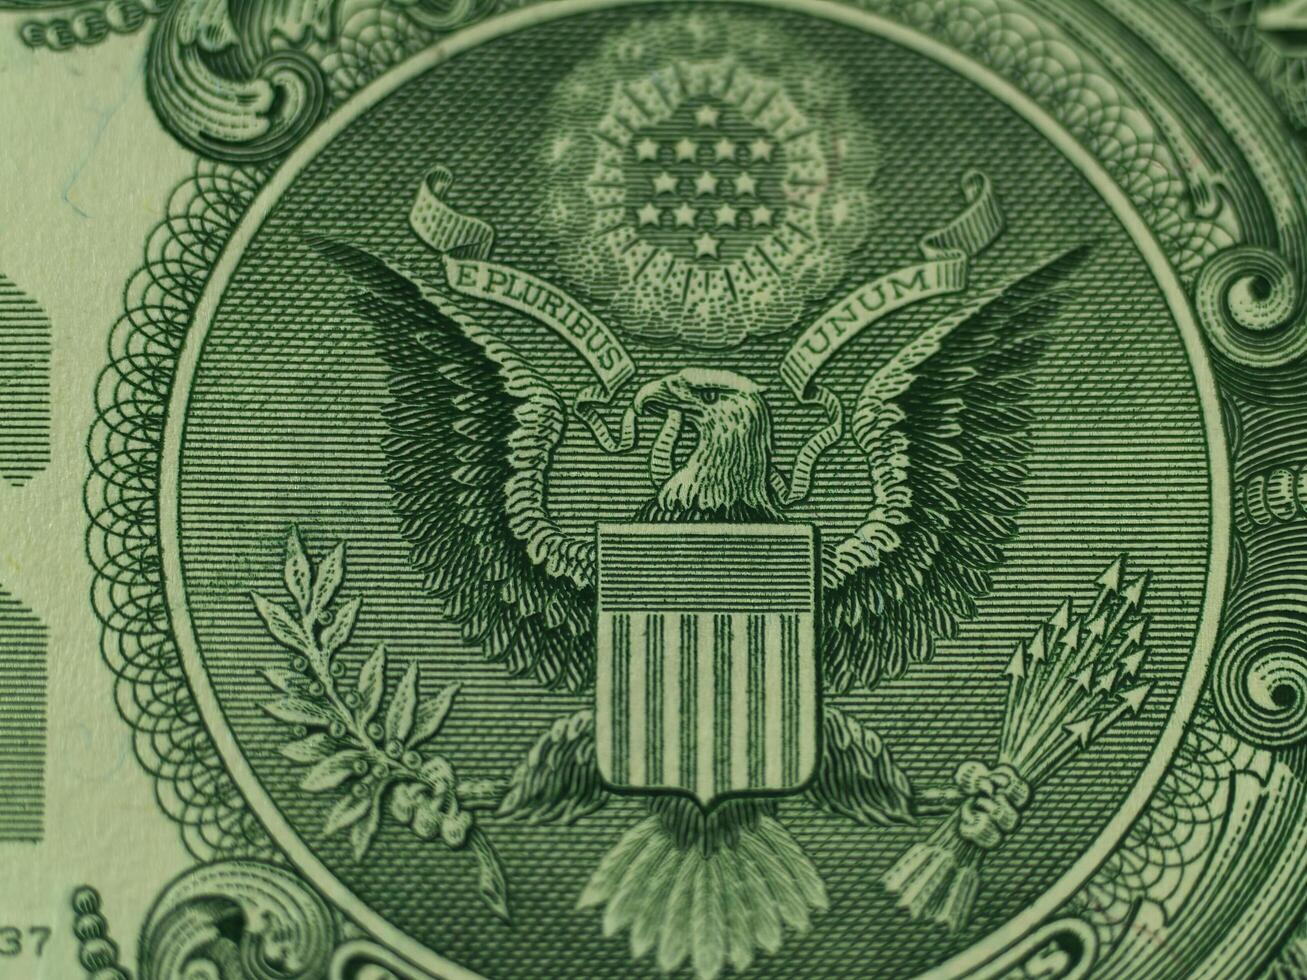 carmichael, ca, 2006 - fechar-se detalhe do Unidos estados 1 dólar Águia foca foto